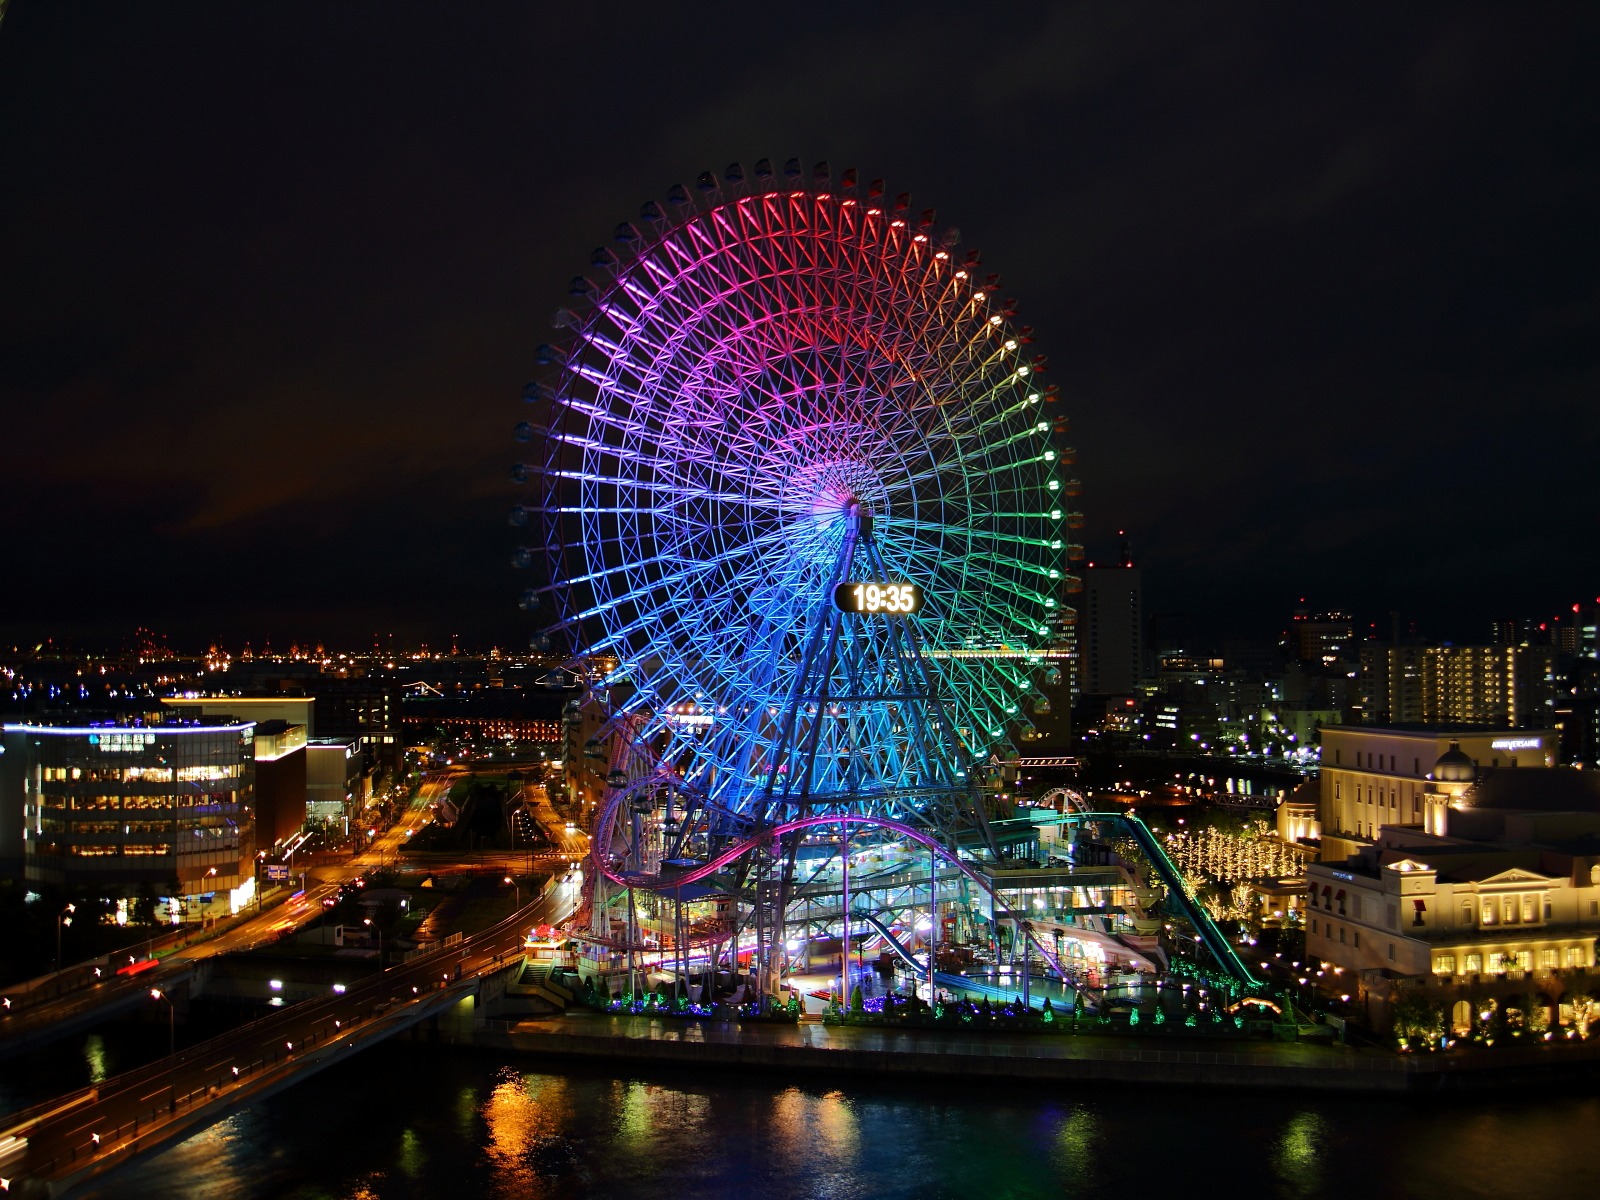 横浜夜景 横浜散歩19 みなとみらい２１ 横浜ベイホテル東急夜景写真